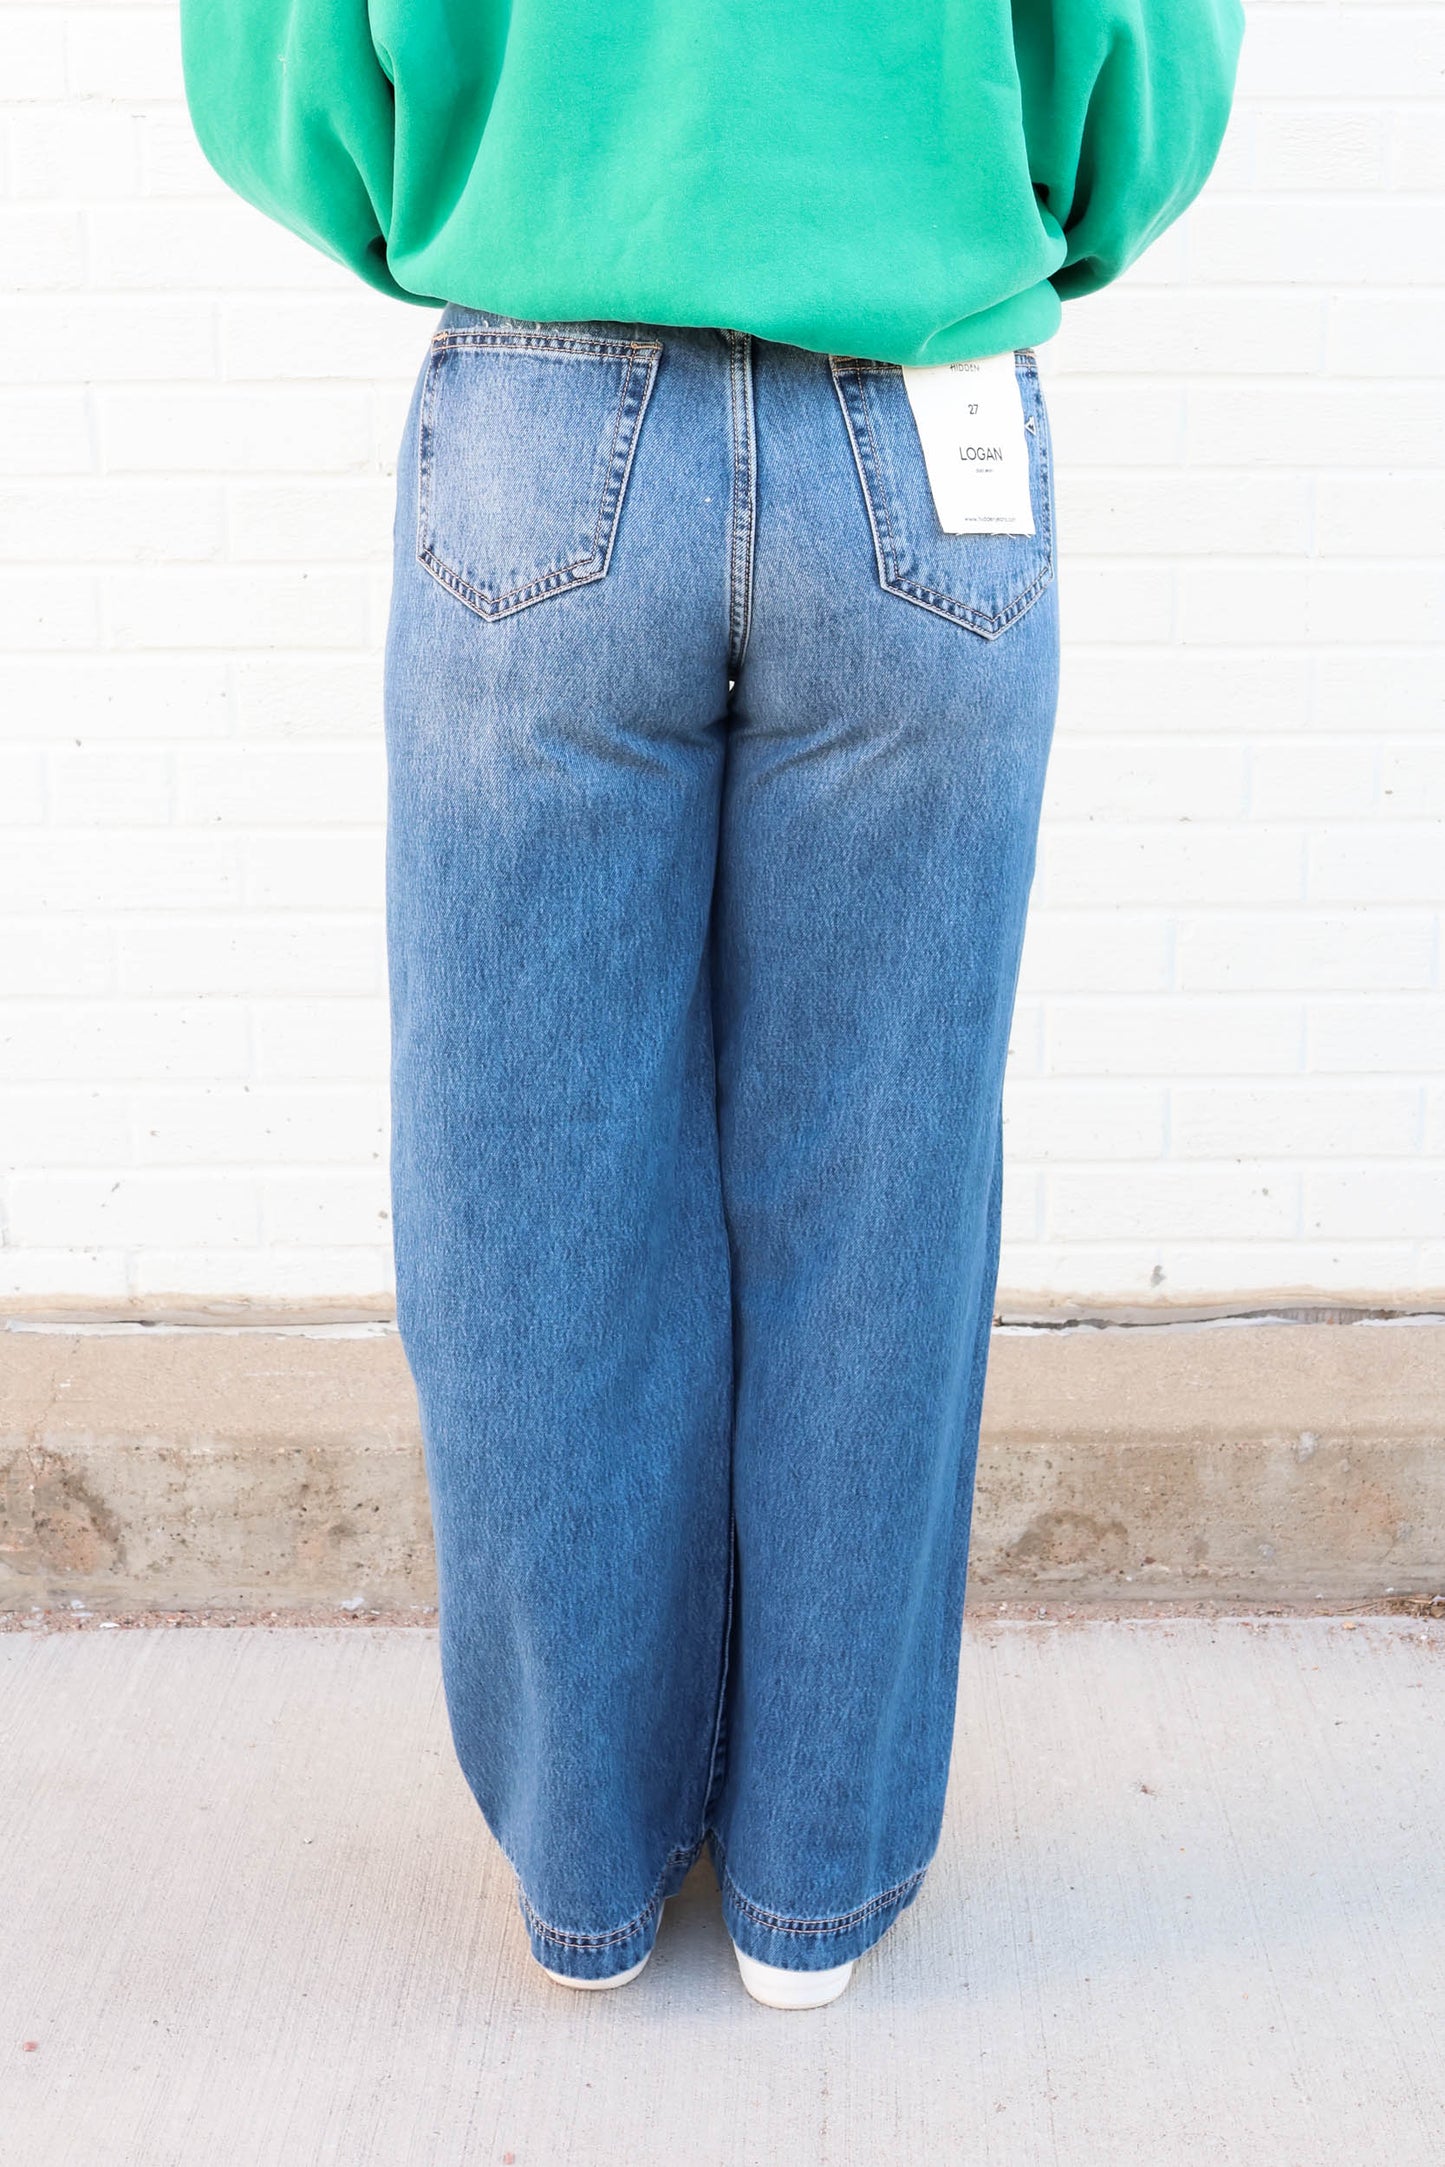 Women's Skinny Jeans għall-bejgħ f'Cleveland, Ohio